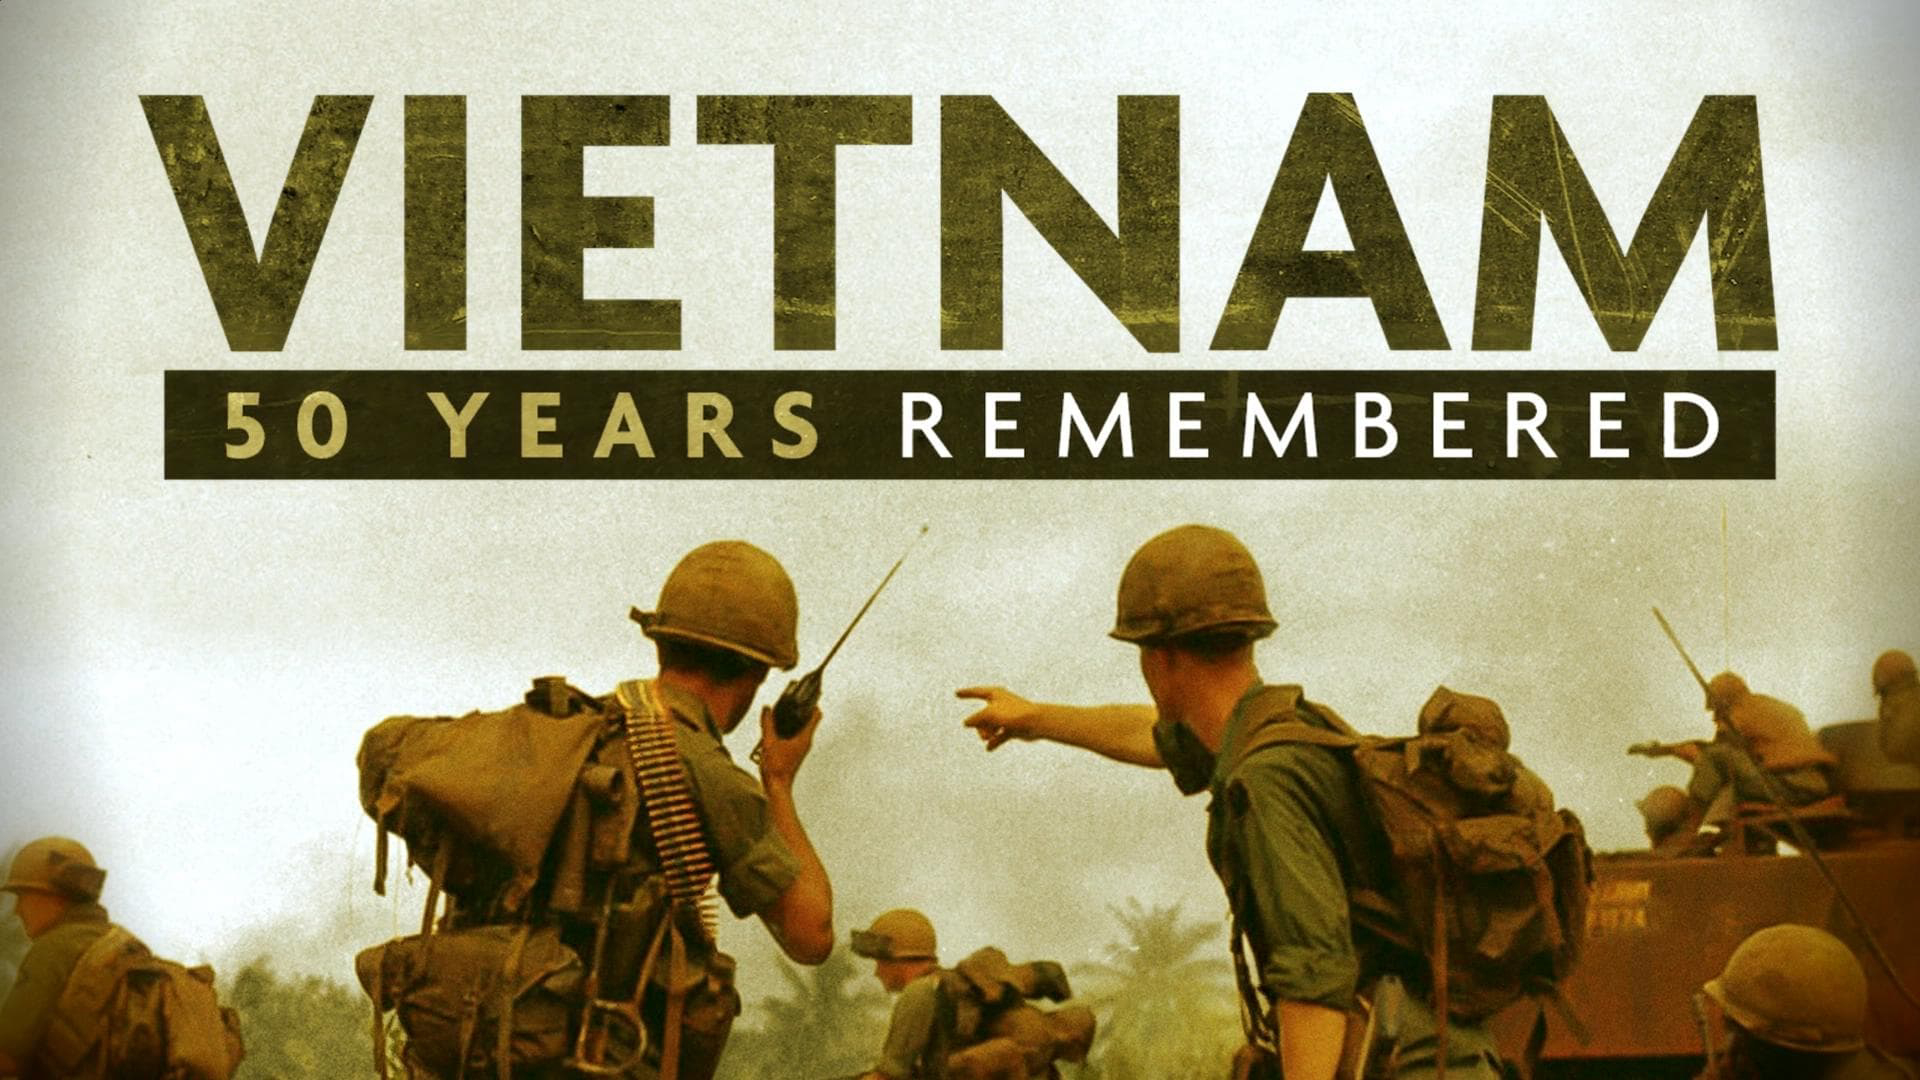 Vietnam: 50 Years Remembered / Vietnam: 50 Years Remembered (2015)